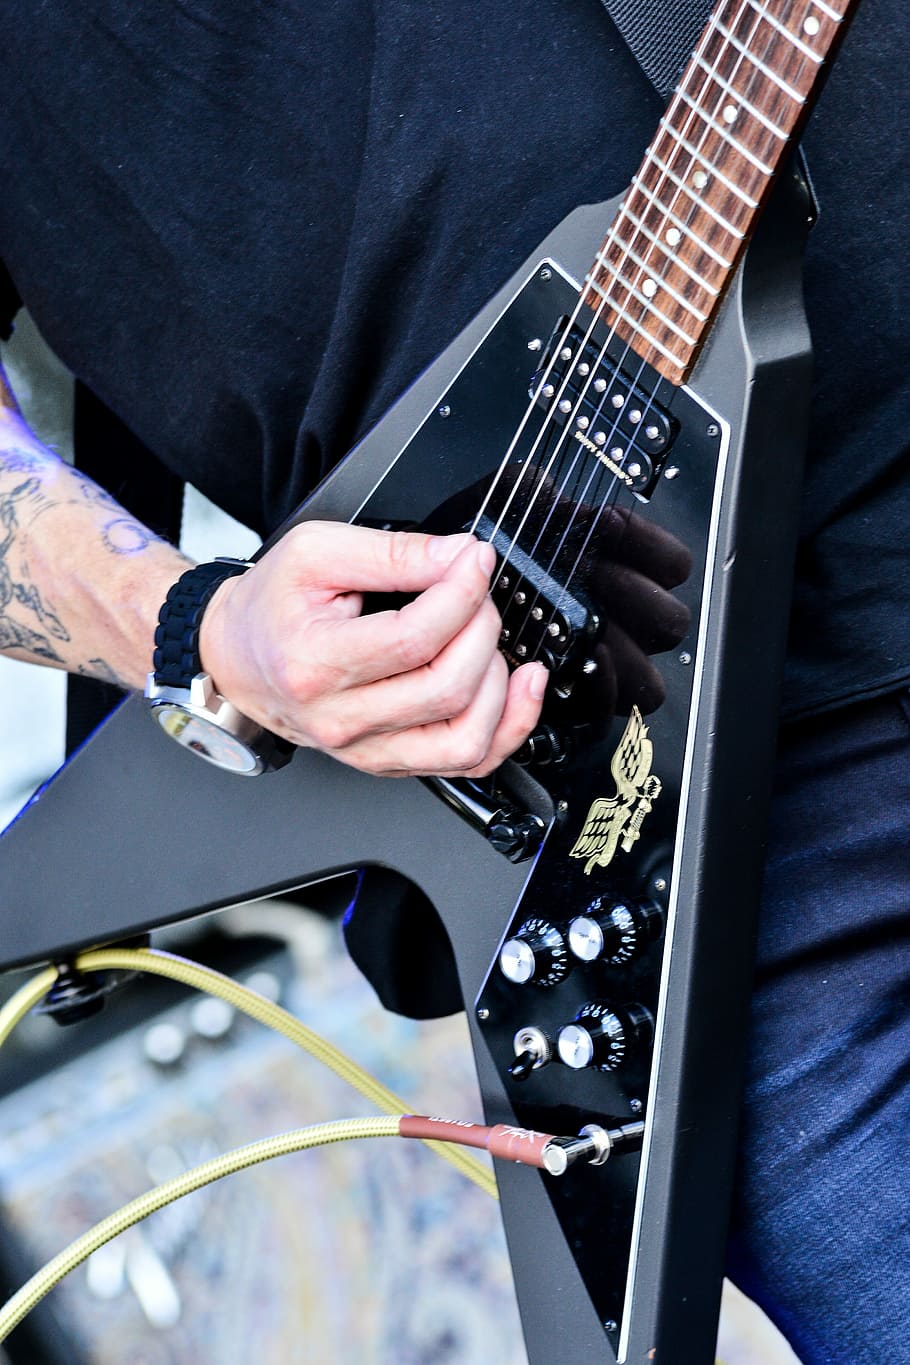 Guitarra, Rock, Música, Rock N Roll, negro, parte del cuerpo humano, mano humana, instrumento musical, solo un hombre, solo hombres